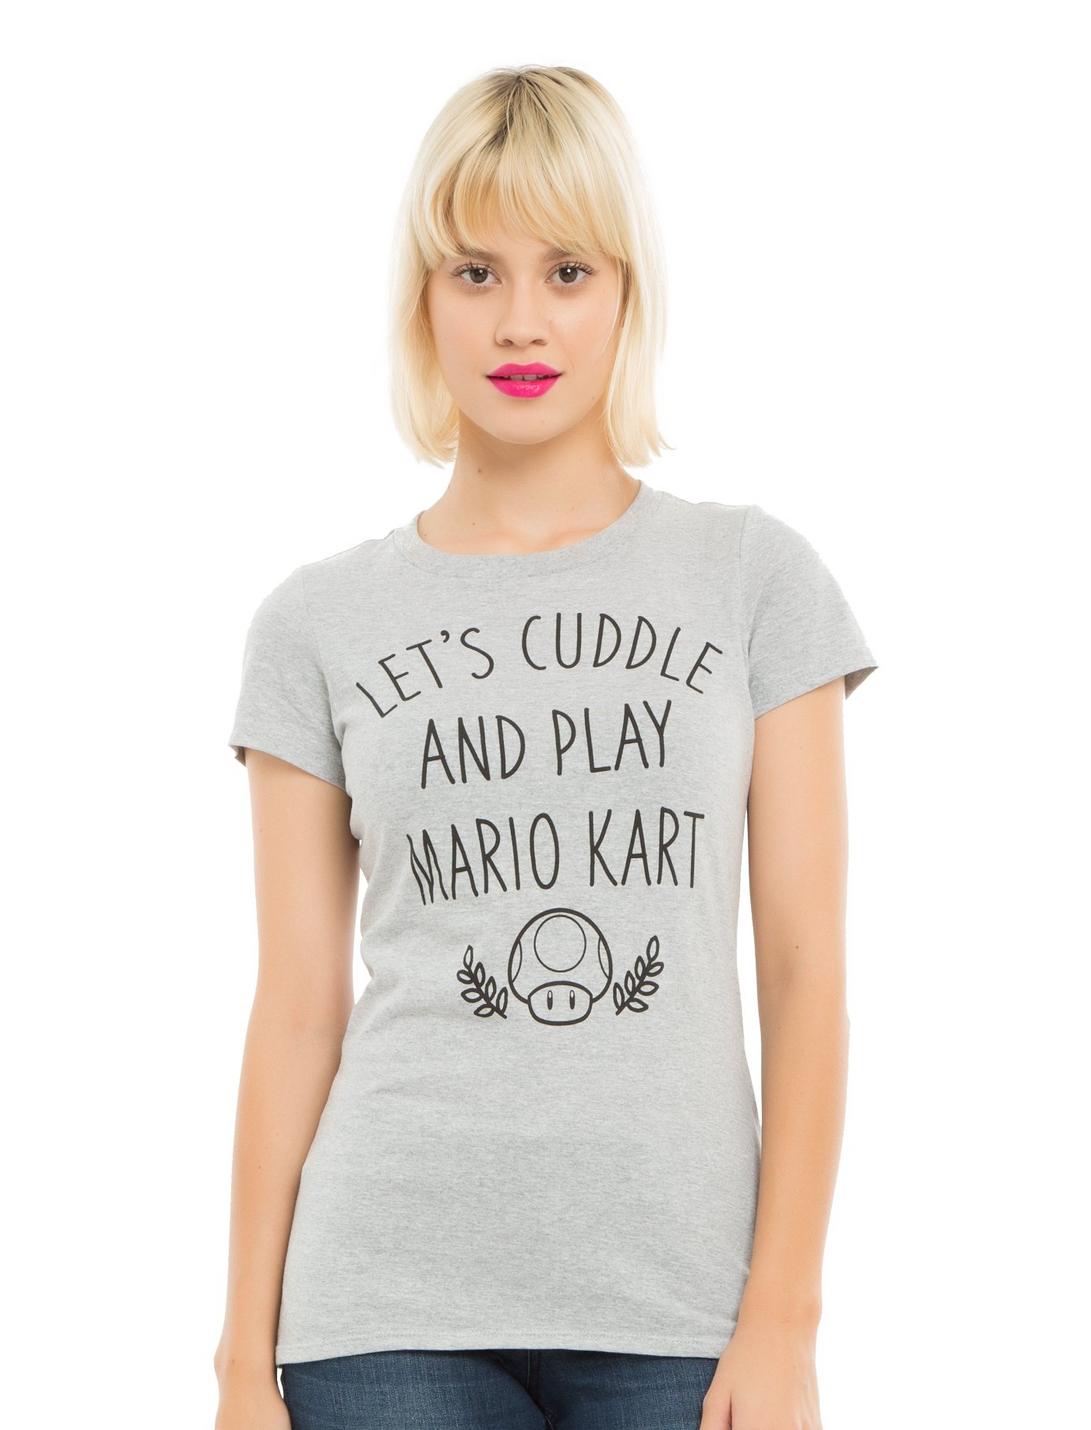 Mario Kart 8 Cuddle And Play Girls T-Shirt, GREY, hi-res